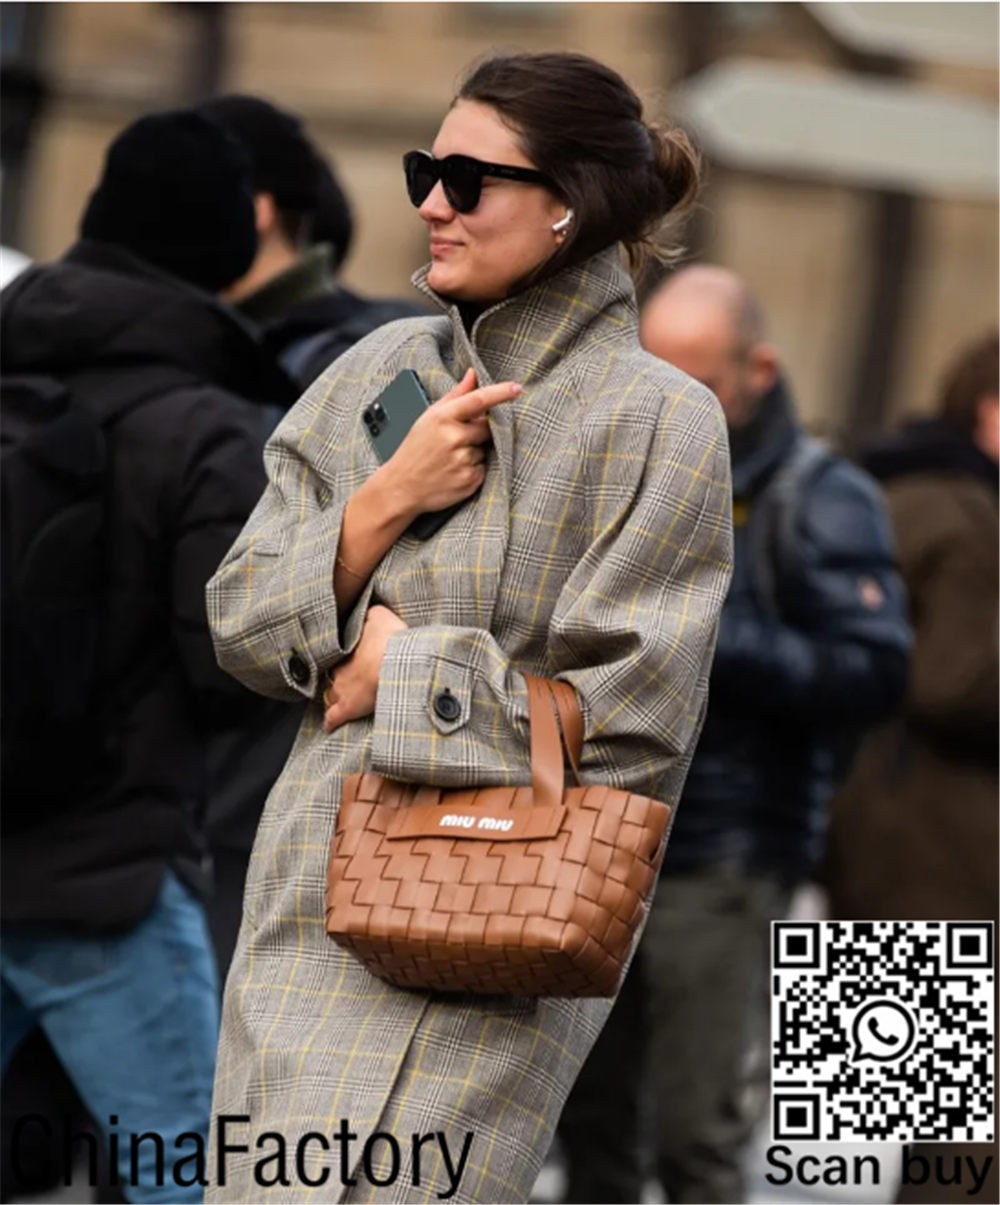 Top 6 replicatassen die het meest waard zijn om te kopen! (2022 nieuwe editie)-Beste kwaliteit nep Louis Vuitton tas online winkel, replica designer tas ru